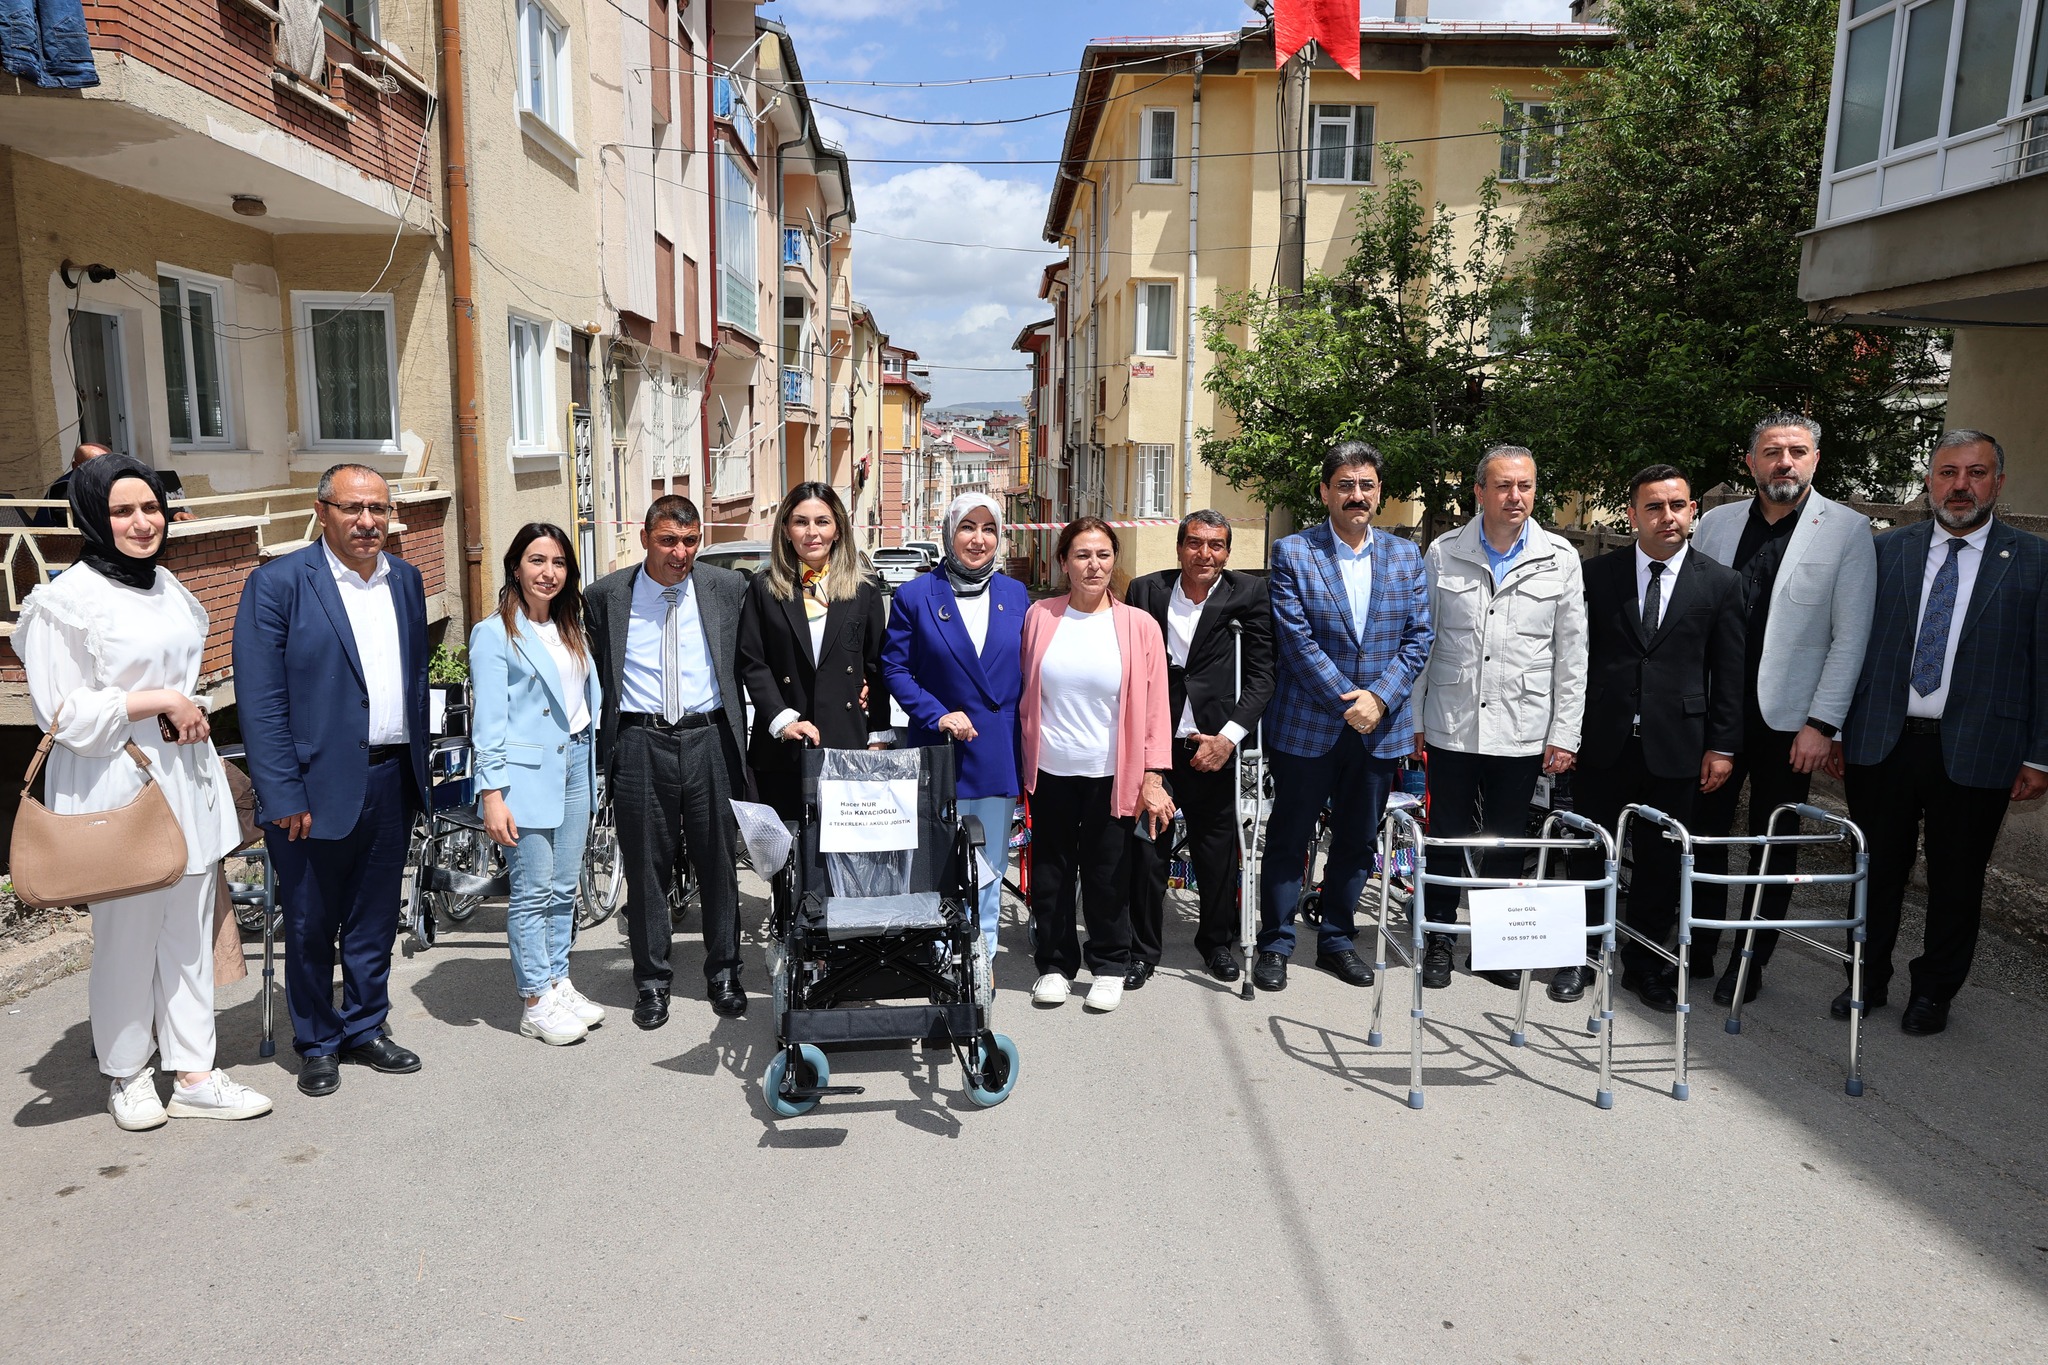 Gaziantep Büyükşehir Belediyesi ve Türkiye Sakatlar Konfederasyonu iş birliği ile Sivas Bedensel Zihinsel Engelli ve Engelli Aileleri Yardımlaşma ve Dayanışma Derneği’ne 61 adet tekerlekli sandalye hibe edildi